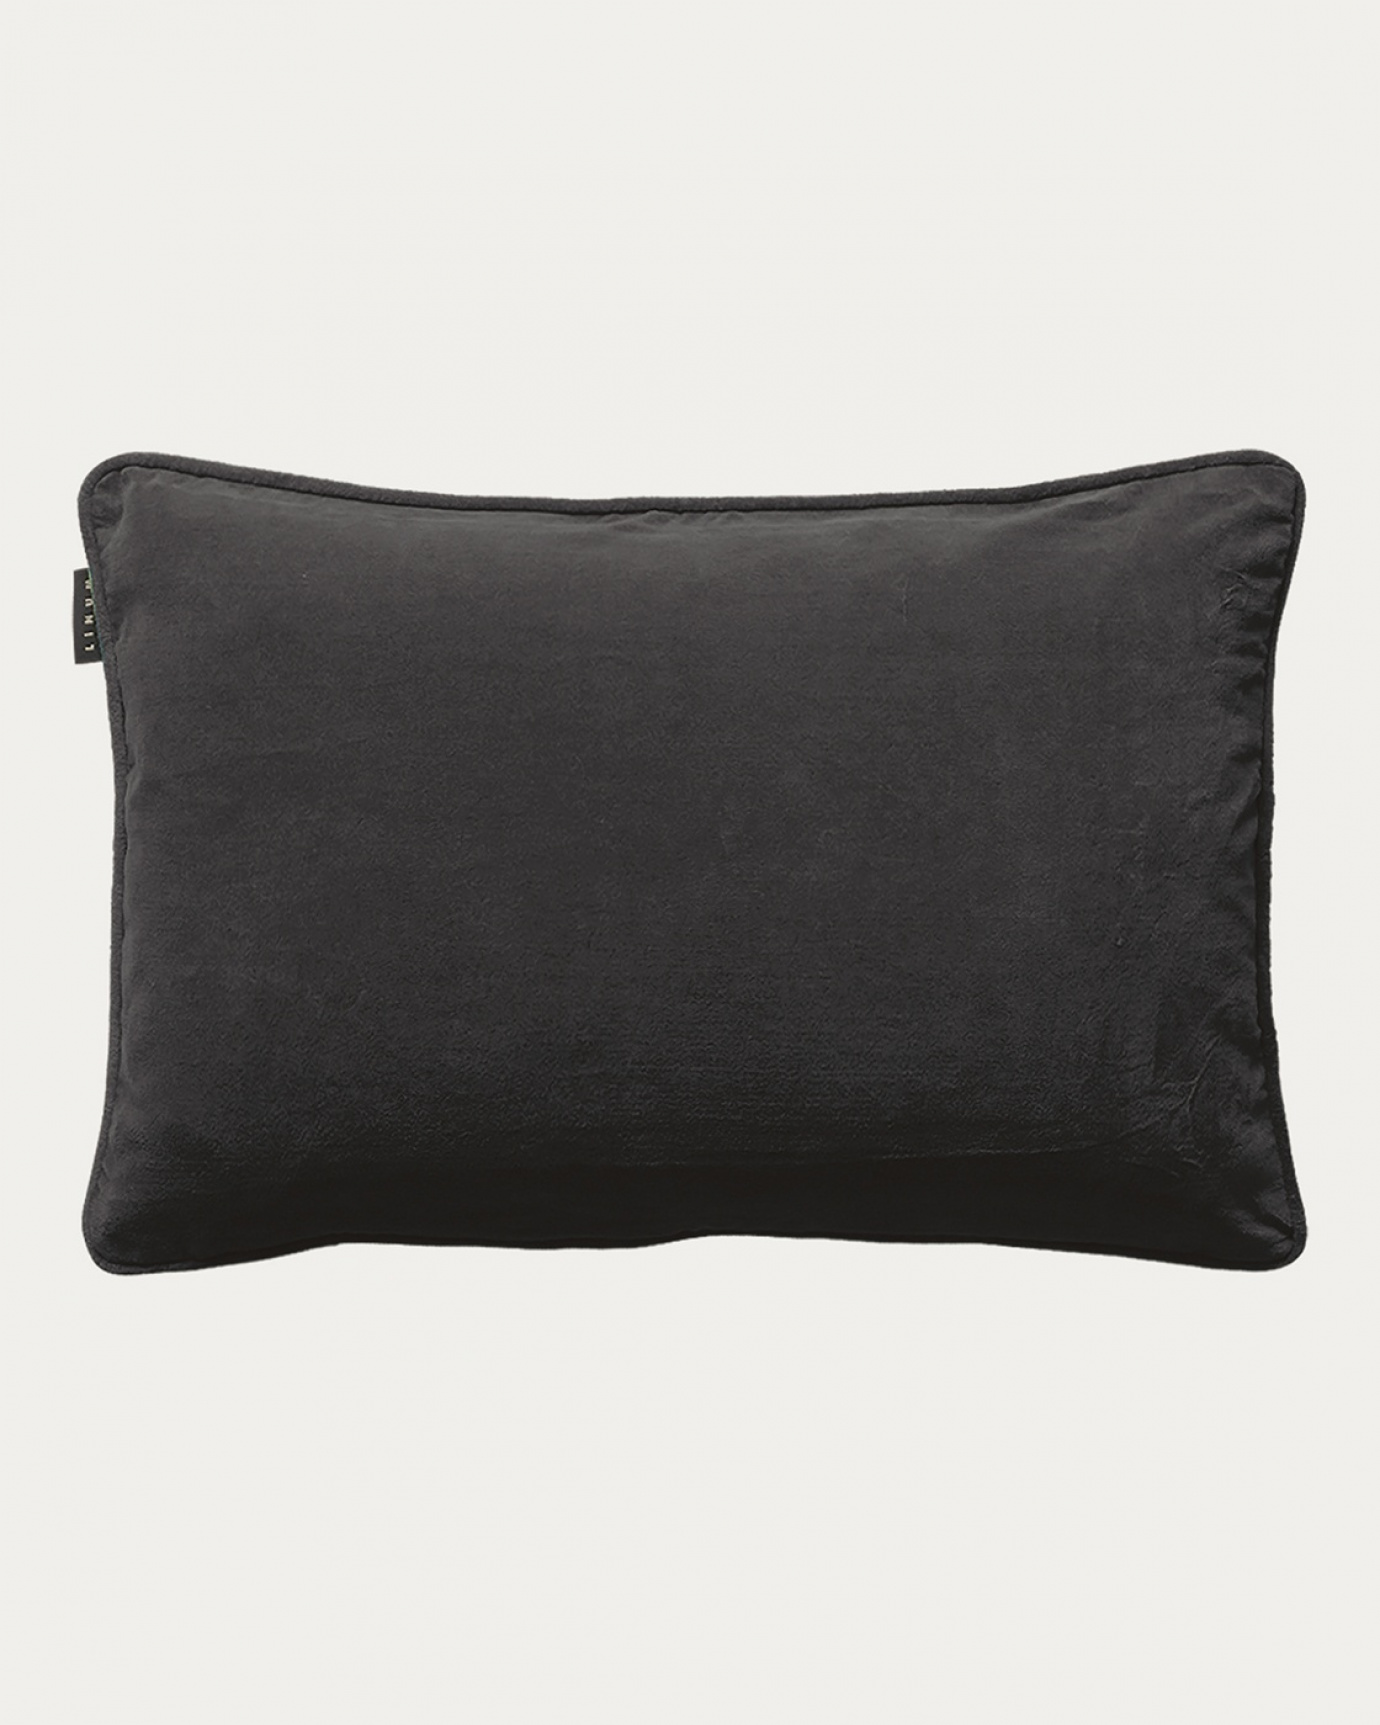 Produktbild dunkles anthrazitgrau PAOLO Kissenhülle aus weichem Baumwollsamt von LINUM DESIGN. Größe 40x60 cm.